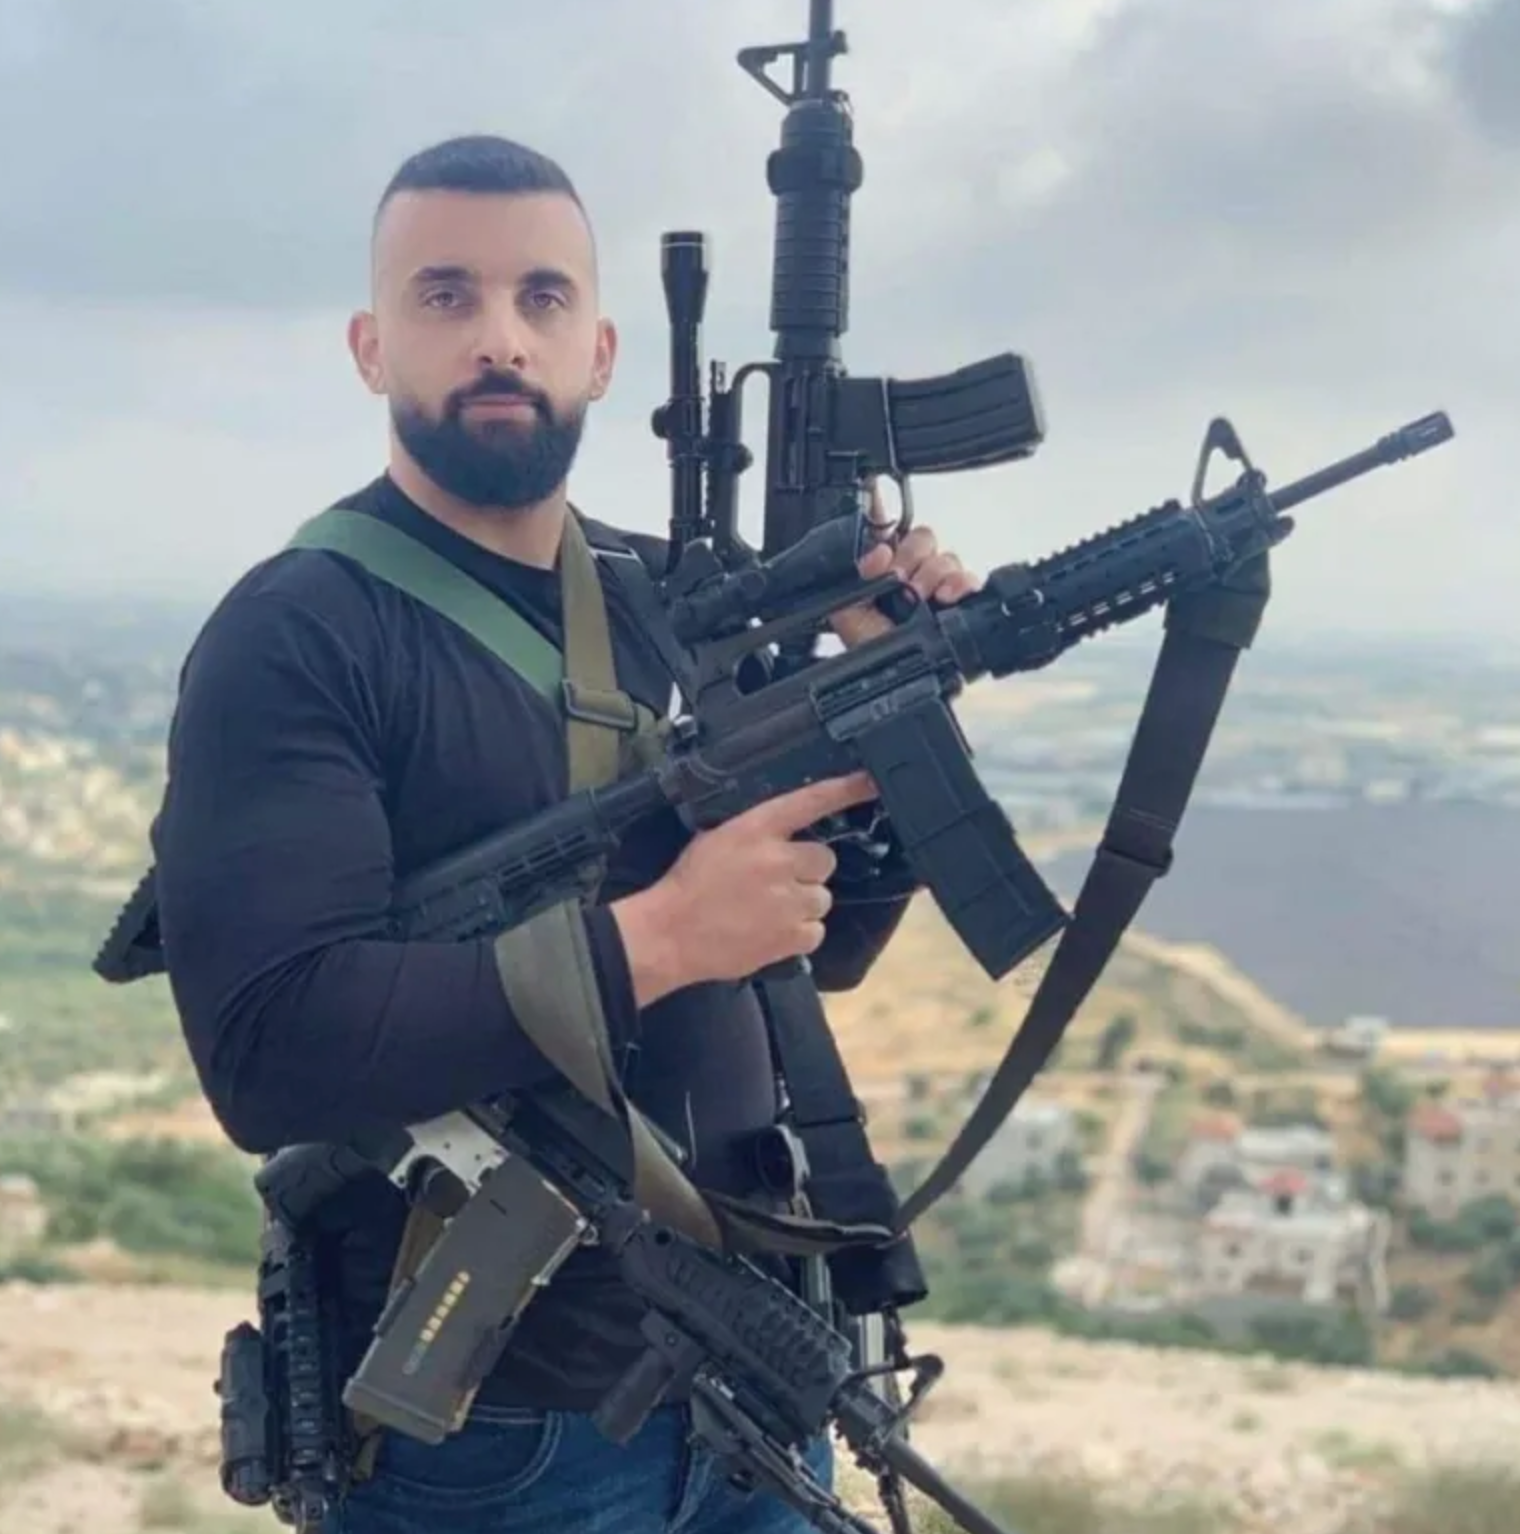 نضال أمين زيدان خازم (28 عامًا)، أحد قادة كتيبة جنين - سرايا القدس في مخيم جنين، اغتالته قوة مستعربين مع الشهيد "شريم" وسط مدينة جنين يوم 16 آذار.